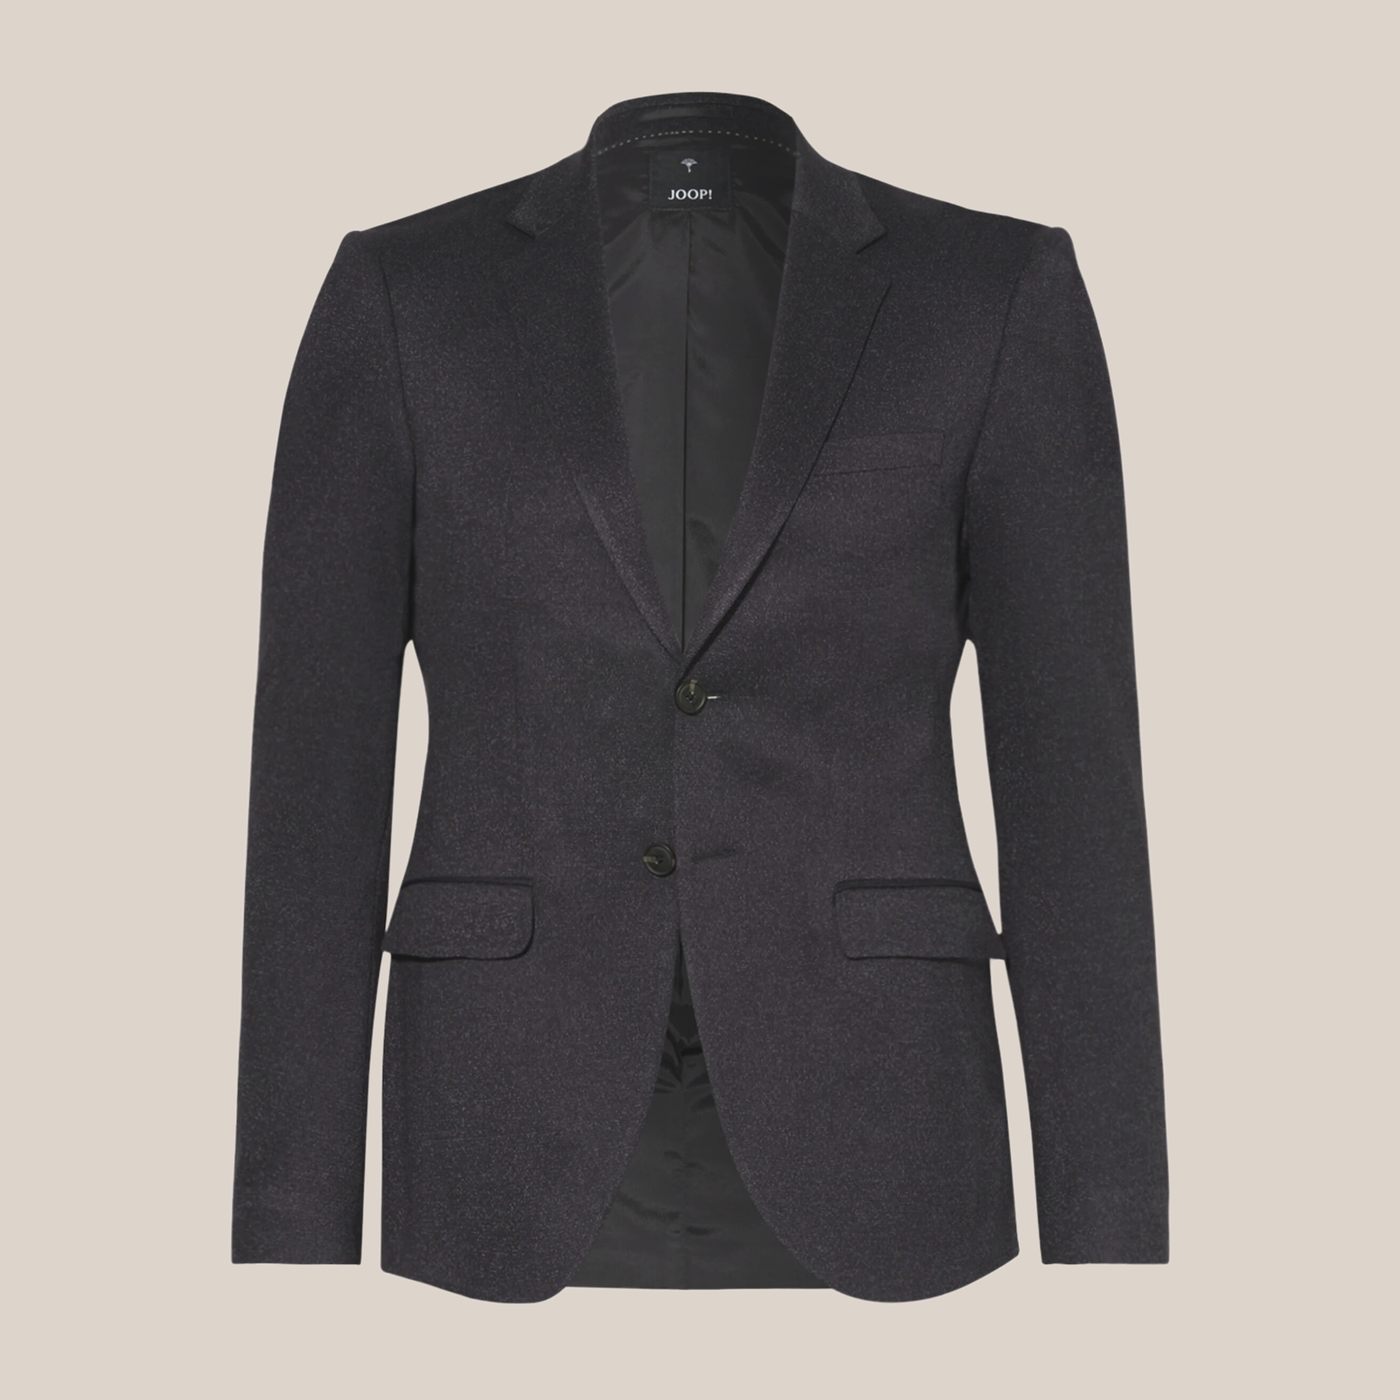 Gotstyle Fashion - Joop! Suits Mottled Stretch Jersey Knit Blazer - Navy